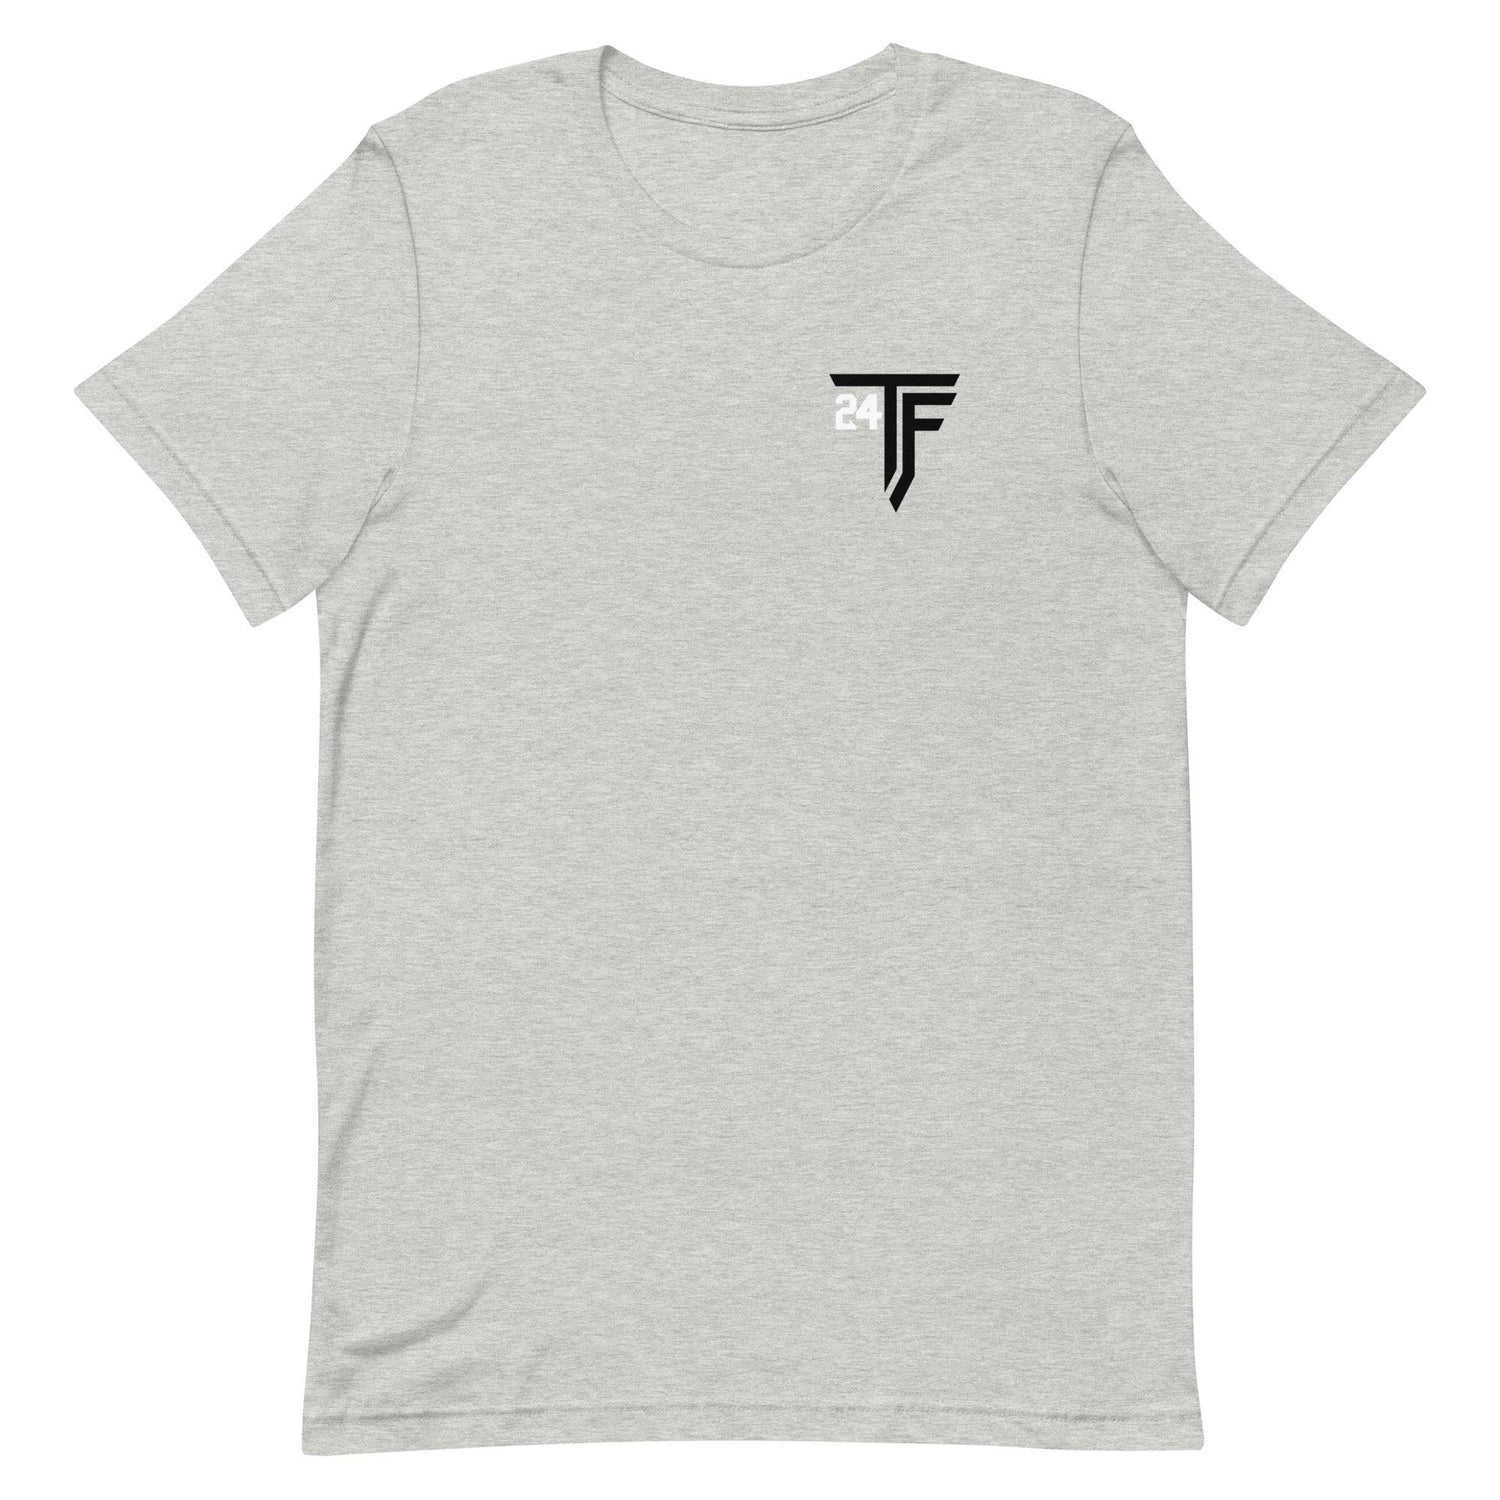 Ty Flowers “TF24” t-shirt - Fan Arch